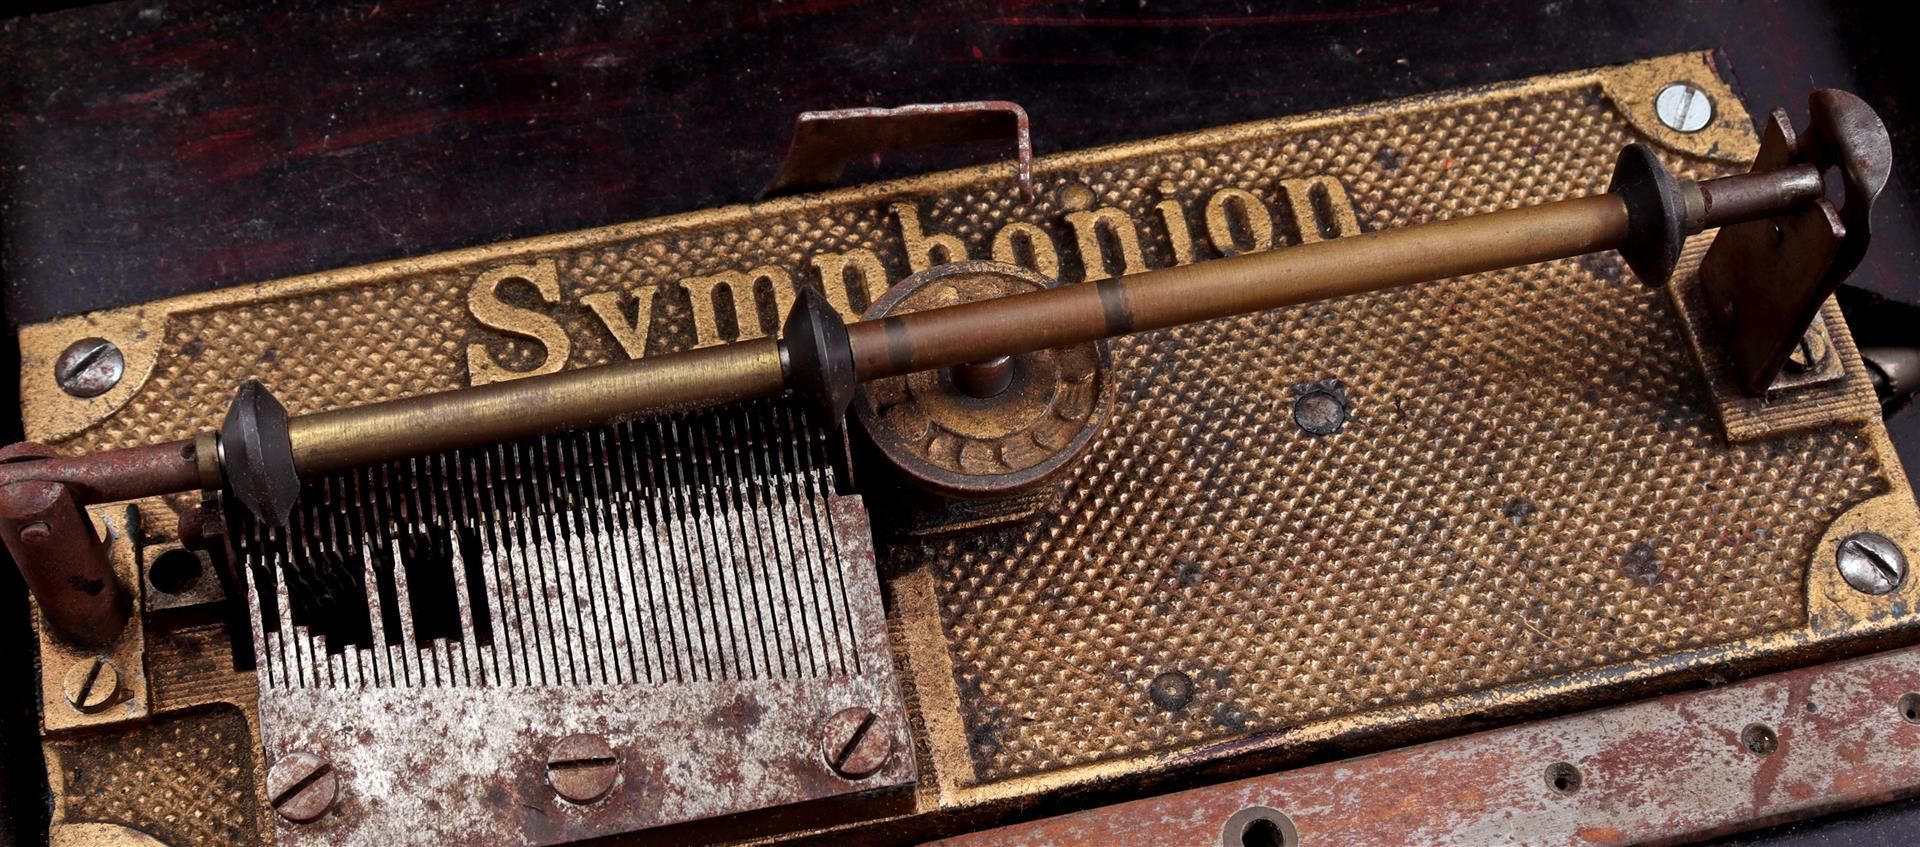 Symphonion music box - Image 2 of 3